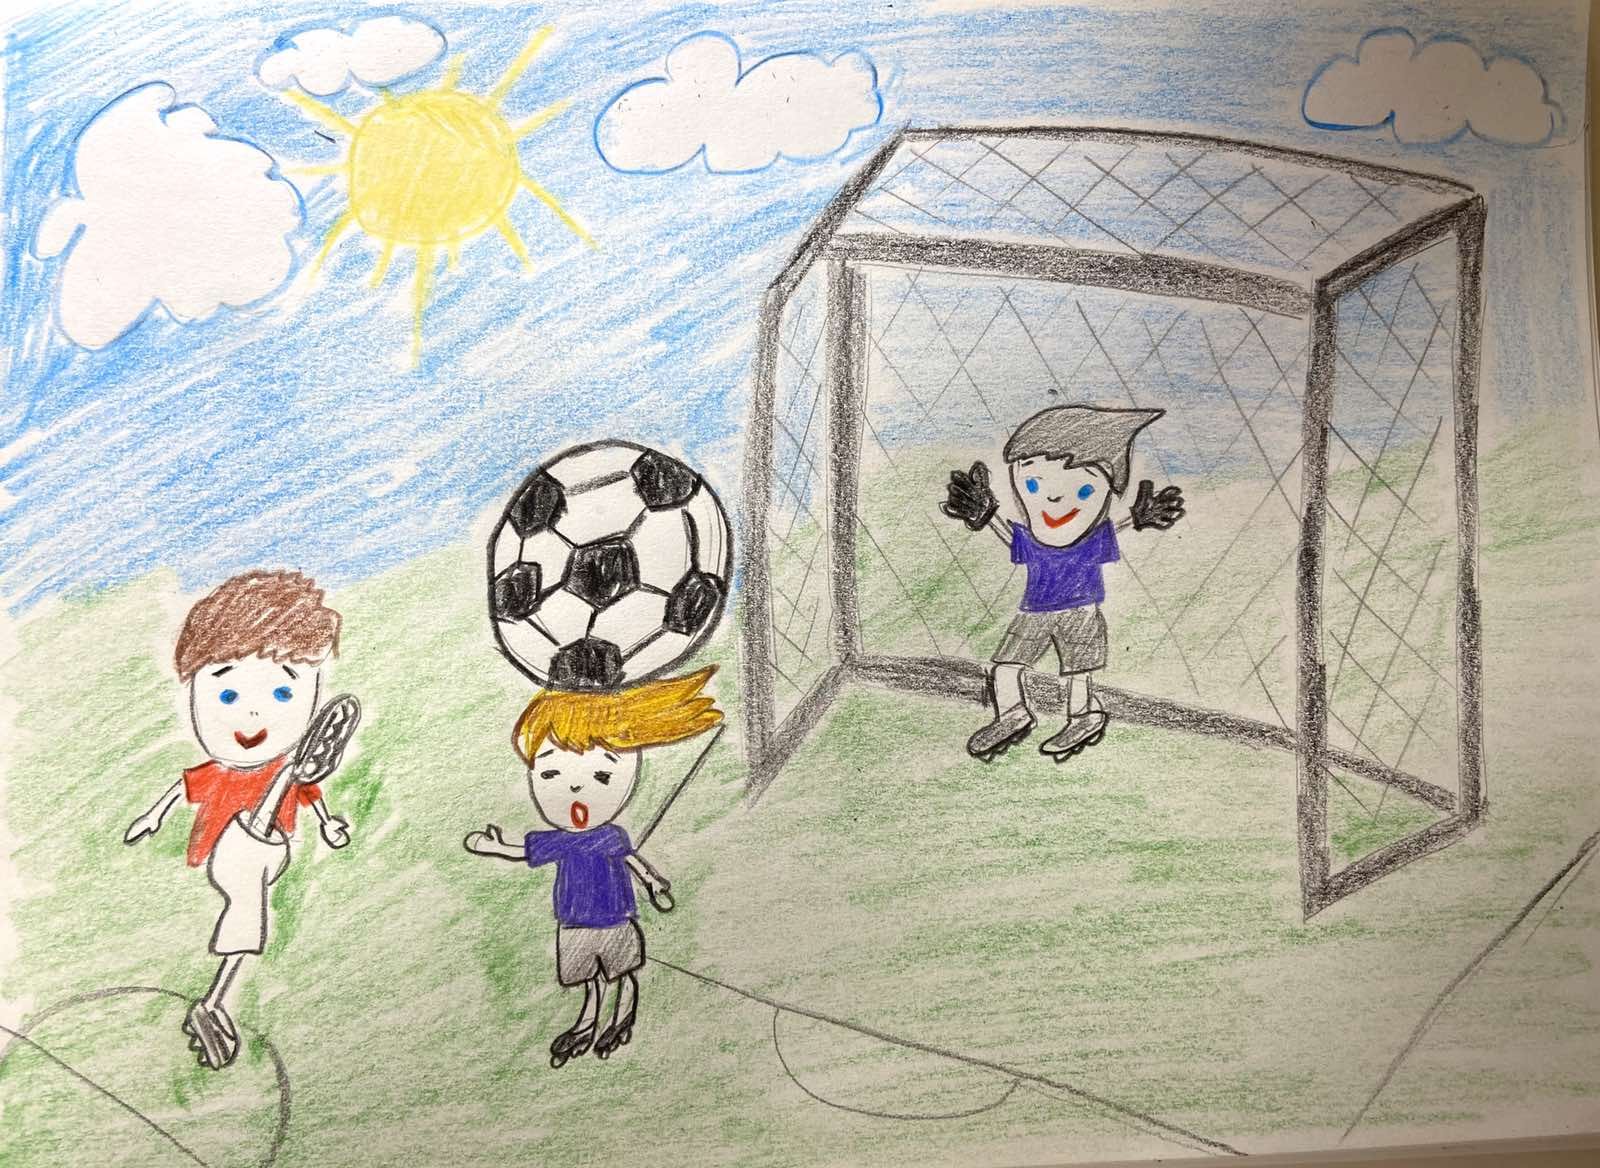 Конкурс детских рисунков про футбол